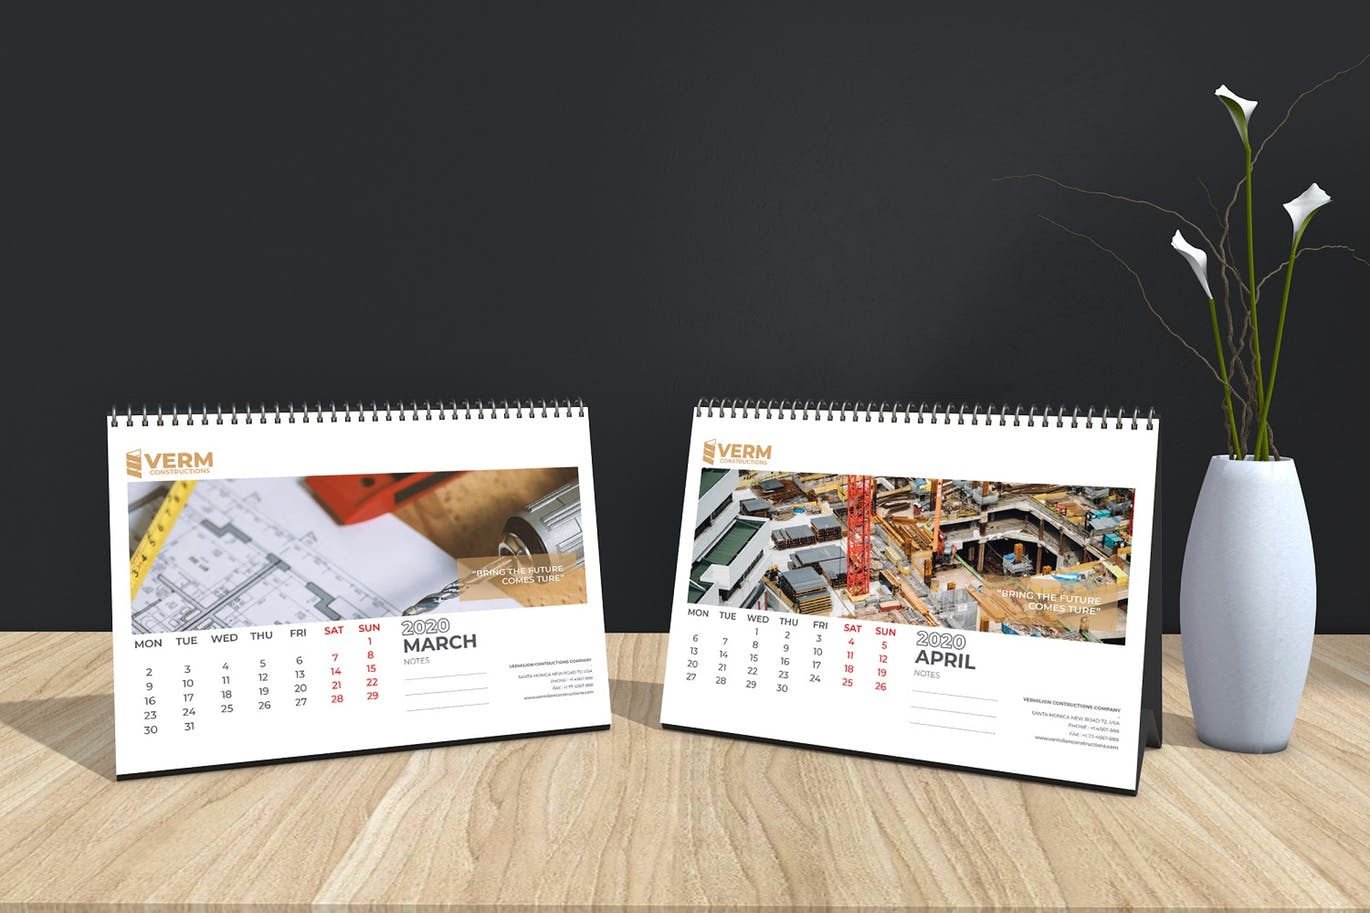 2020年建筑主题台历&挂墙日历表设计模板 Construction Wall & Table Calendar 2020插图10